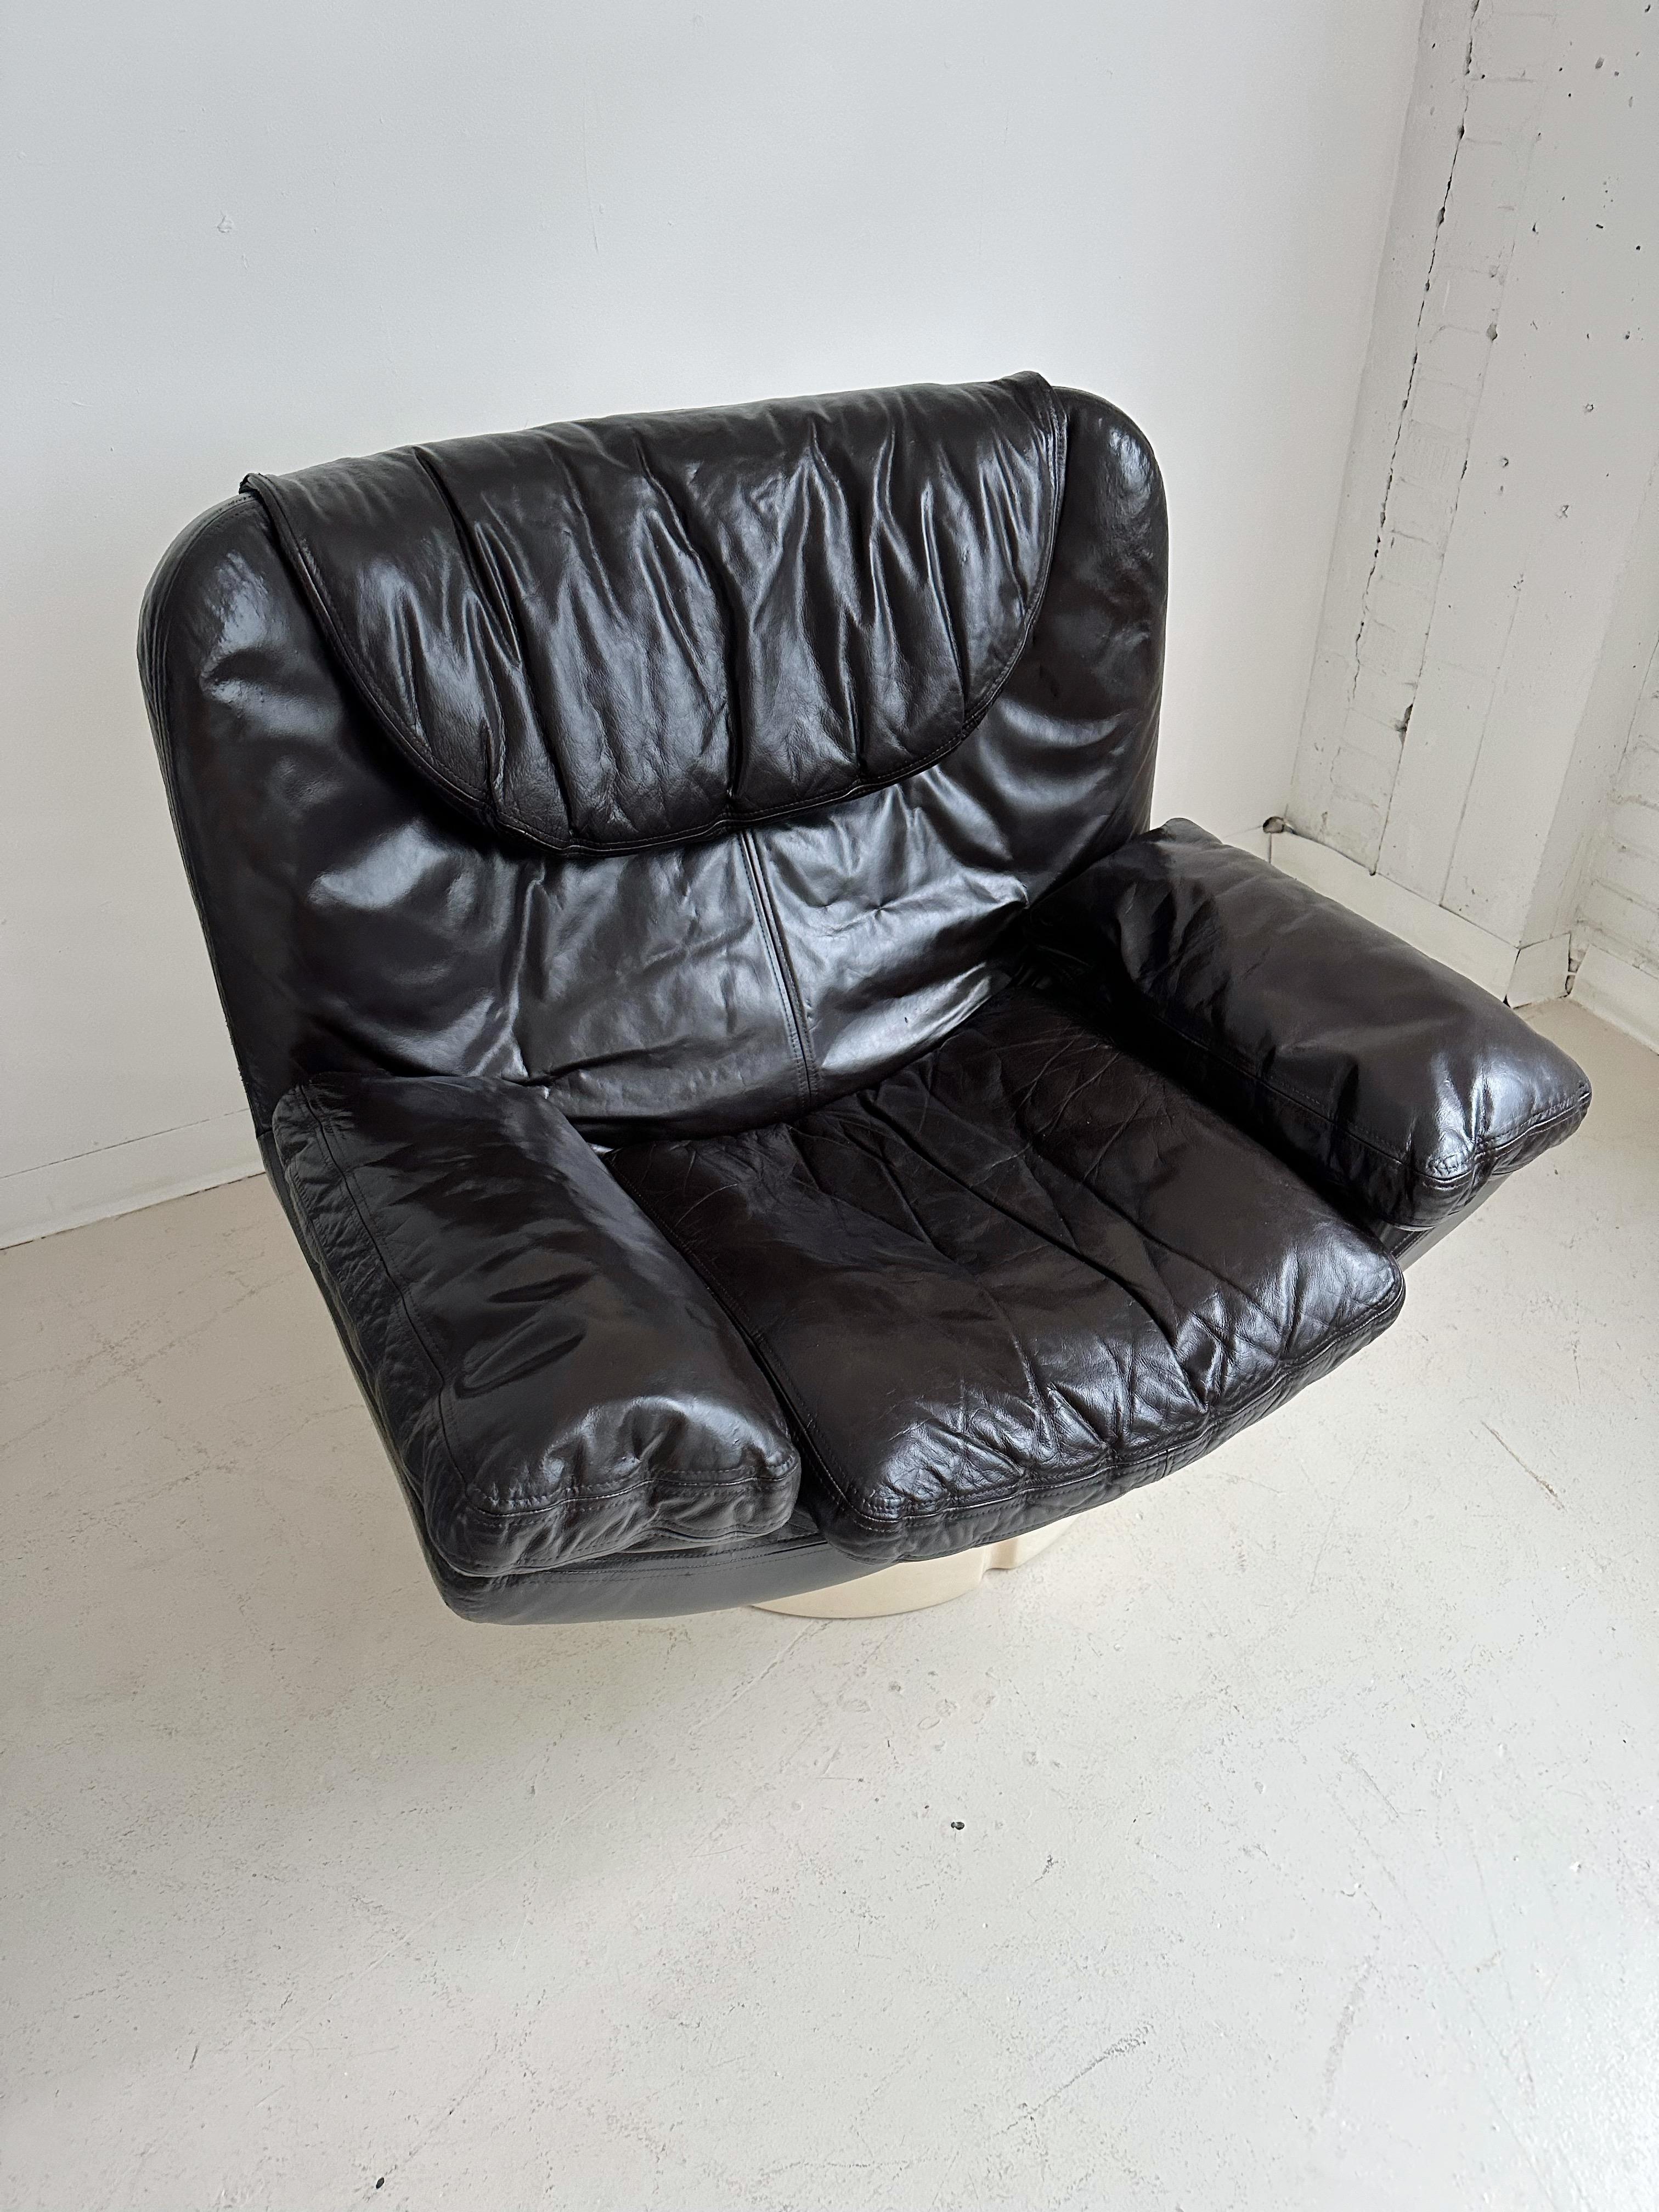 IL POLTRONE Lounge Chair von Ammanati & Vitelli für Comfort, 70er Jahre (Moderne)